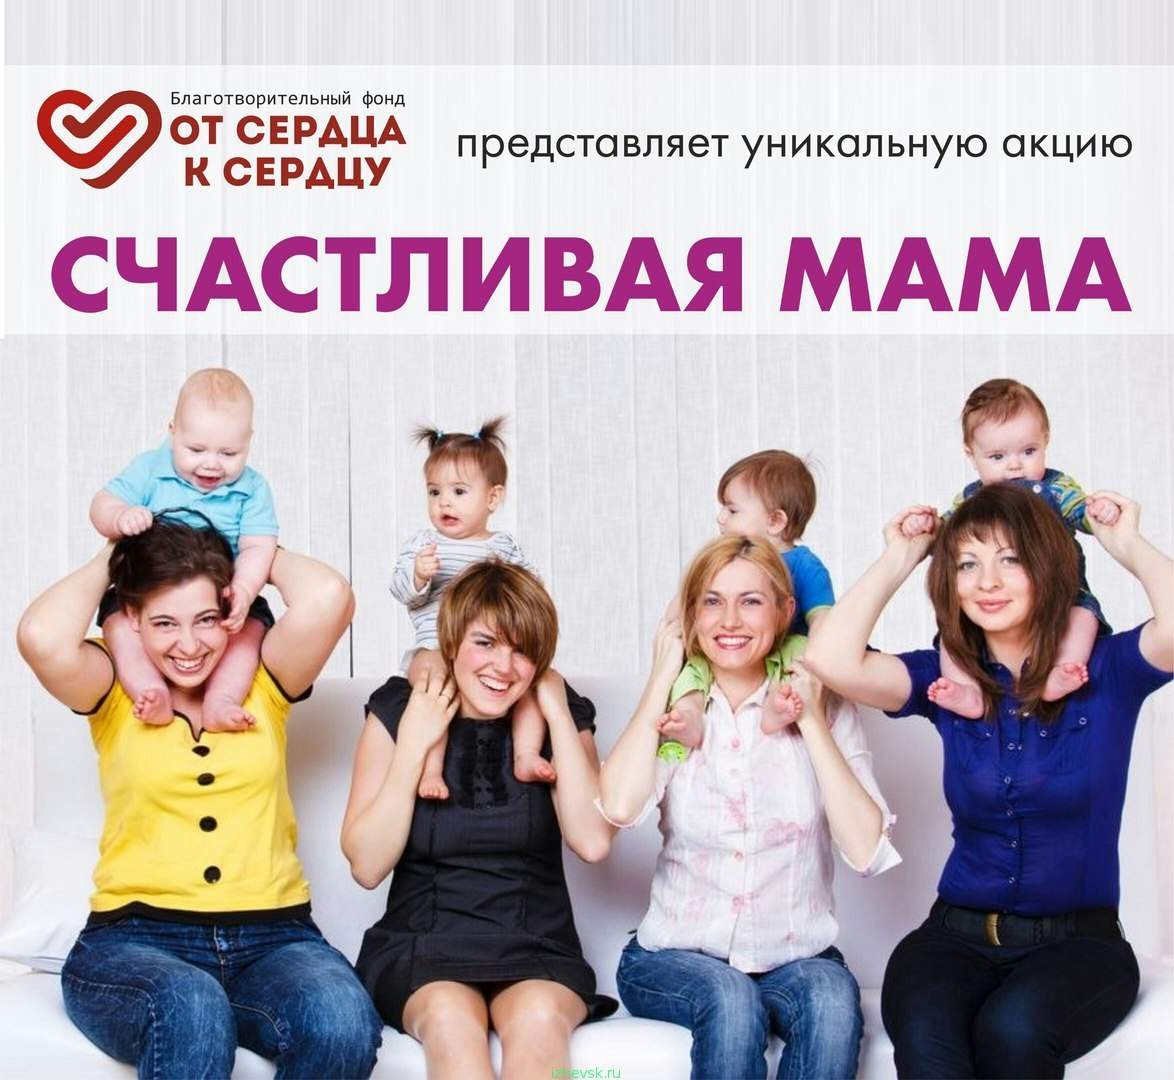 Мамочки керчь. От сердца к сердцу группа. Встреча для мам реклама. Реклама это мама и это мама.